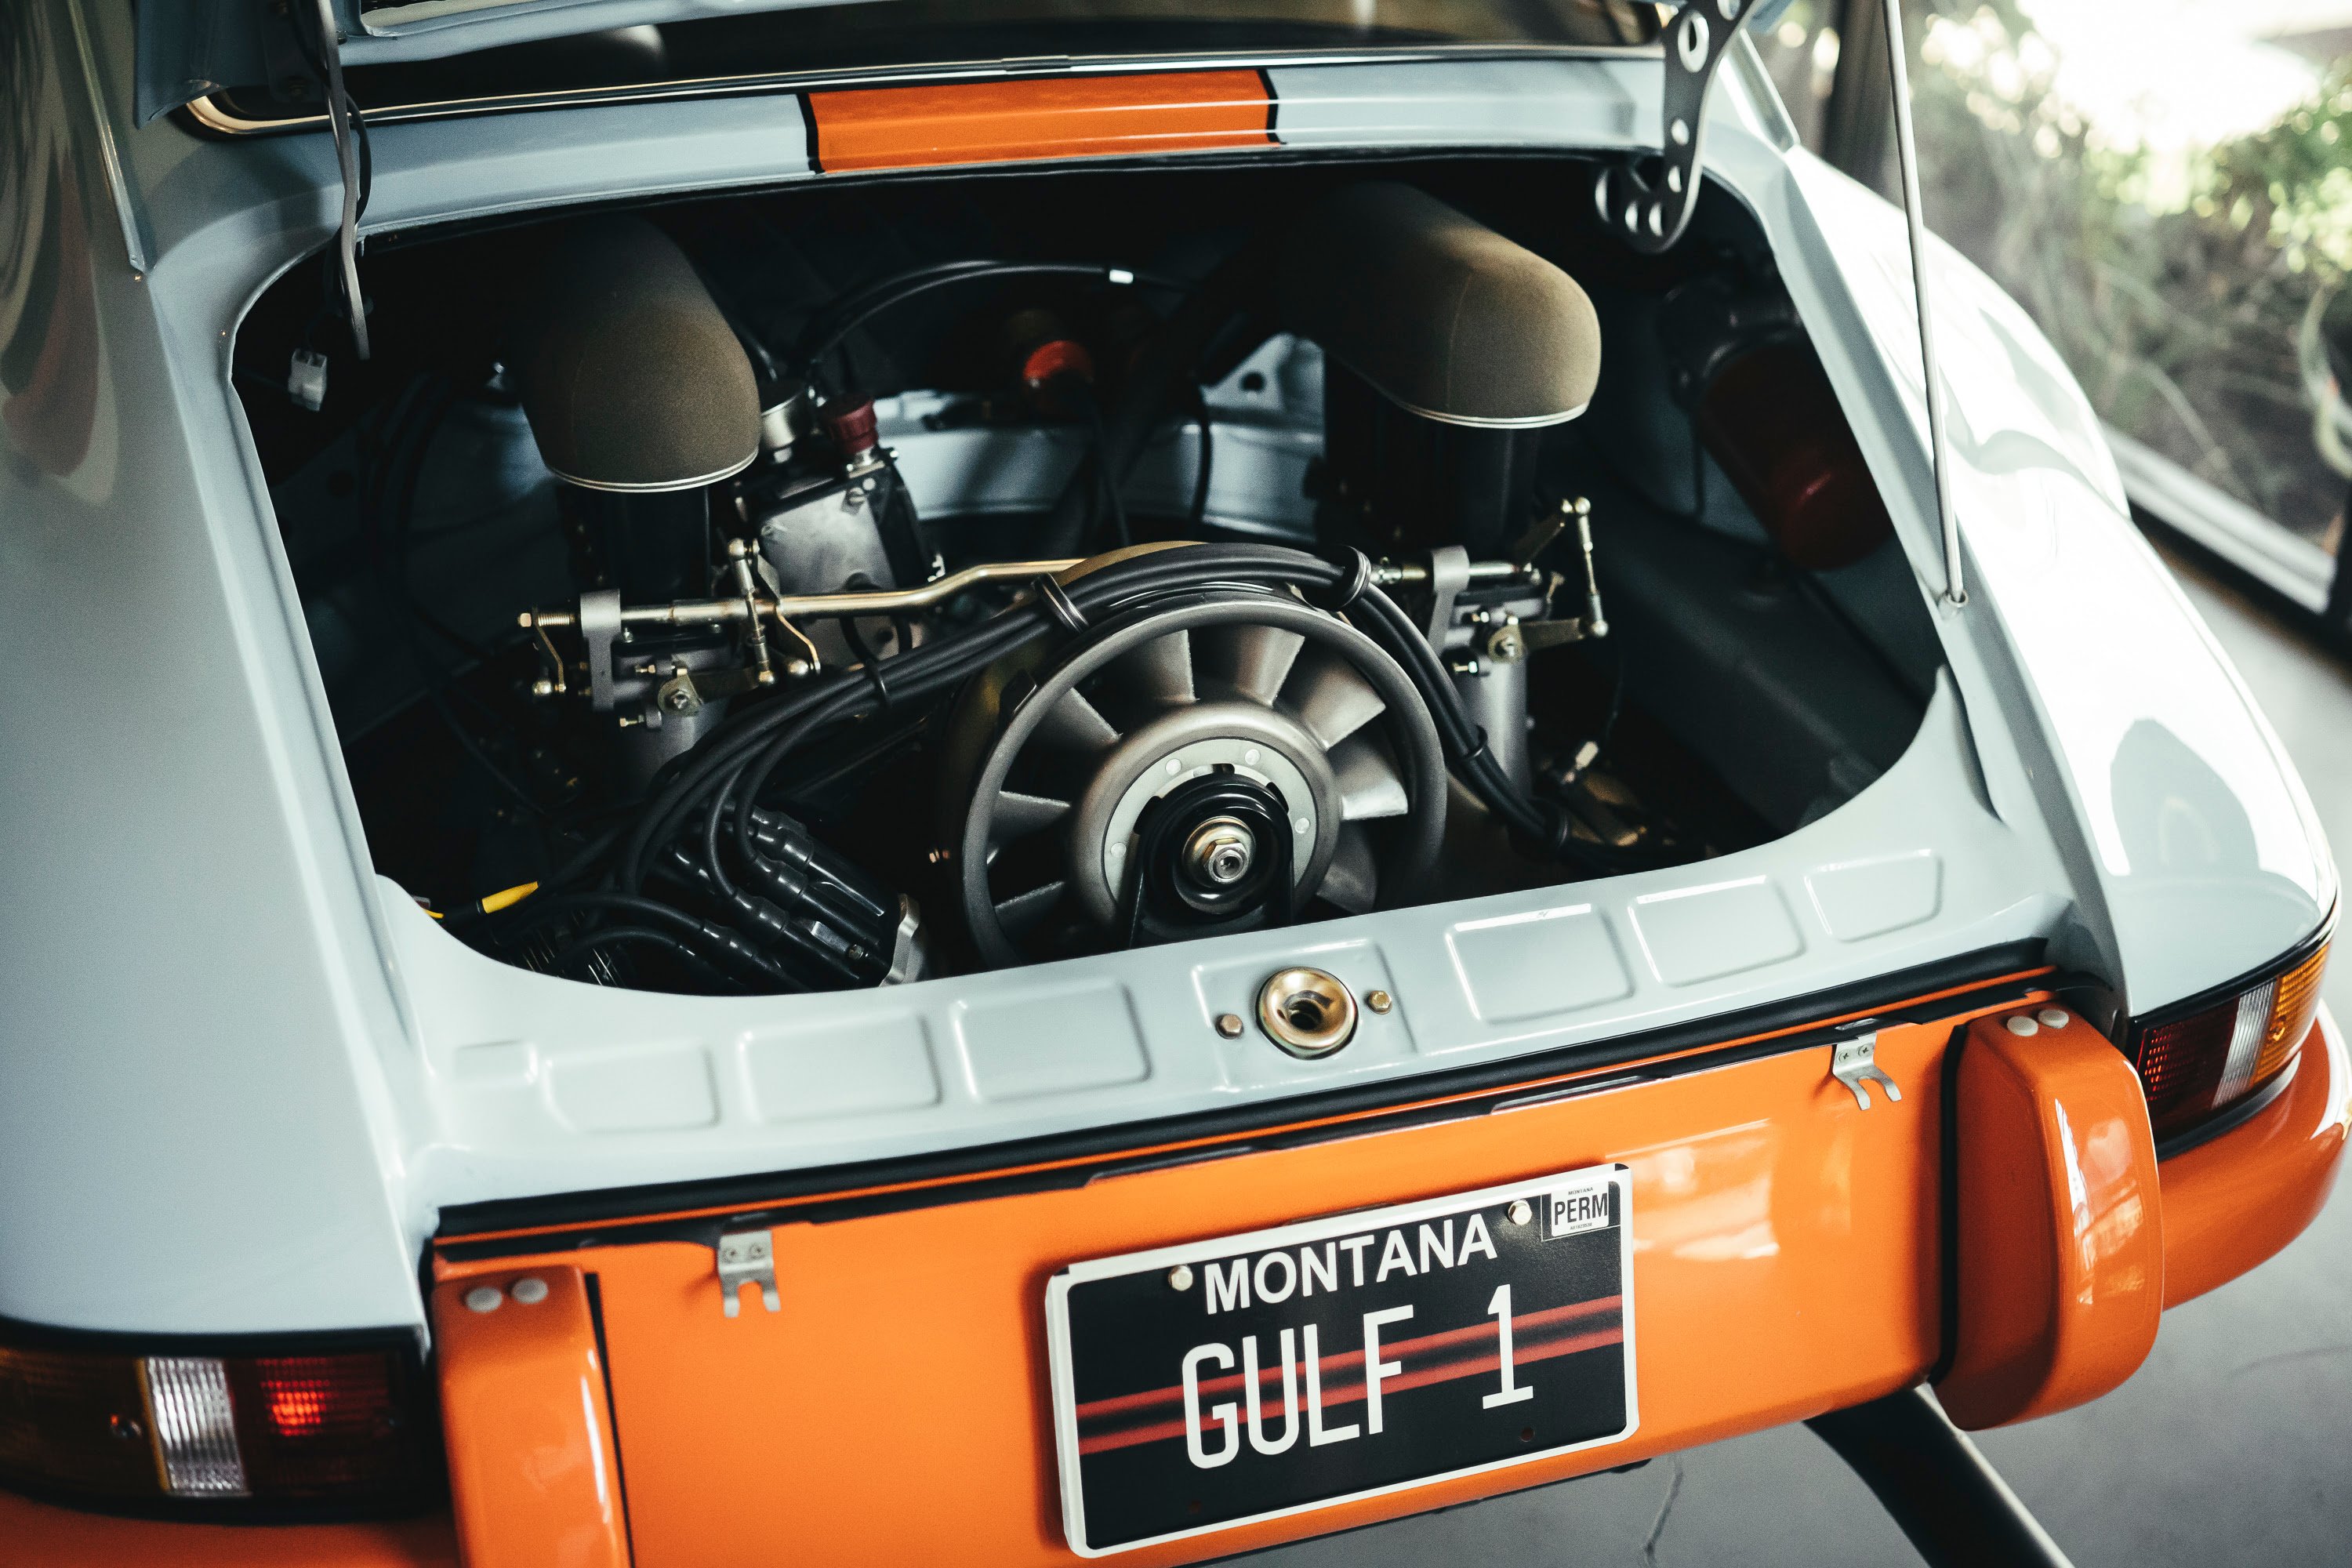 A custom build Gulf livery 911 hotrod at CarParc USA.